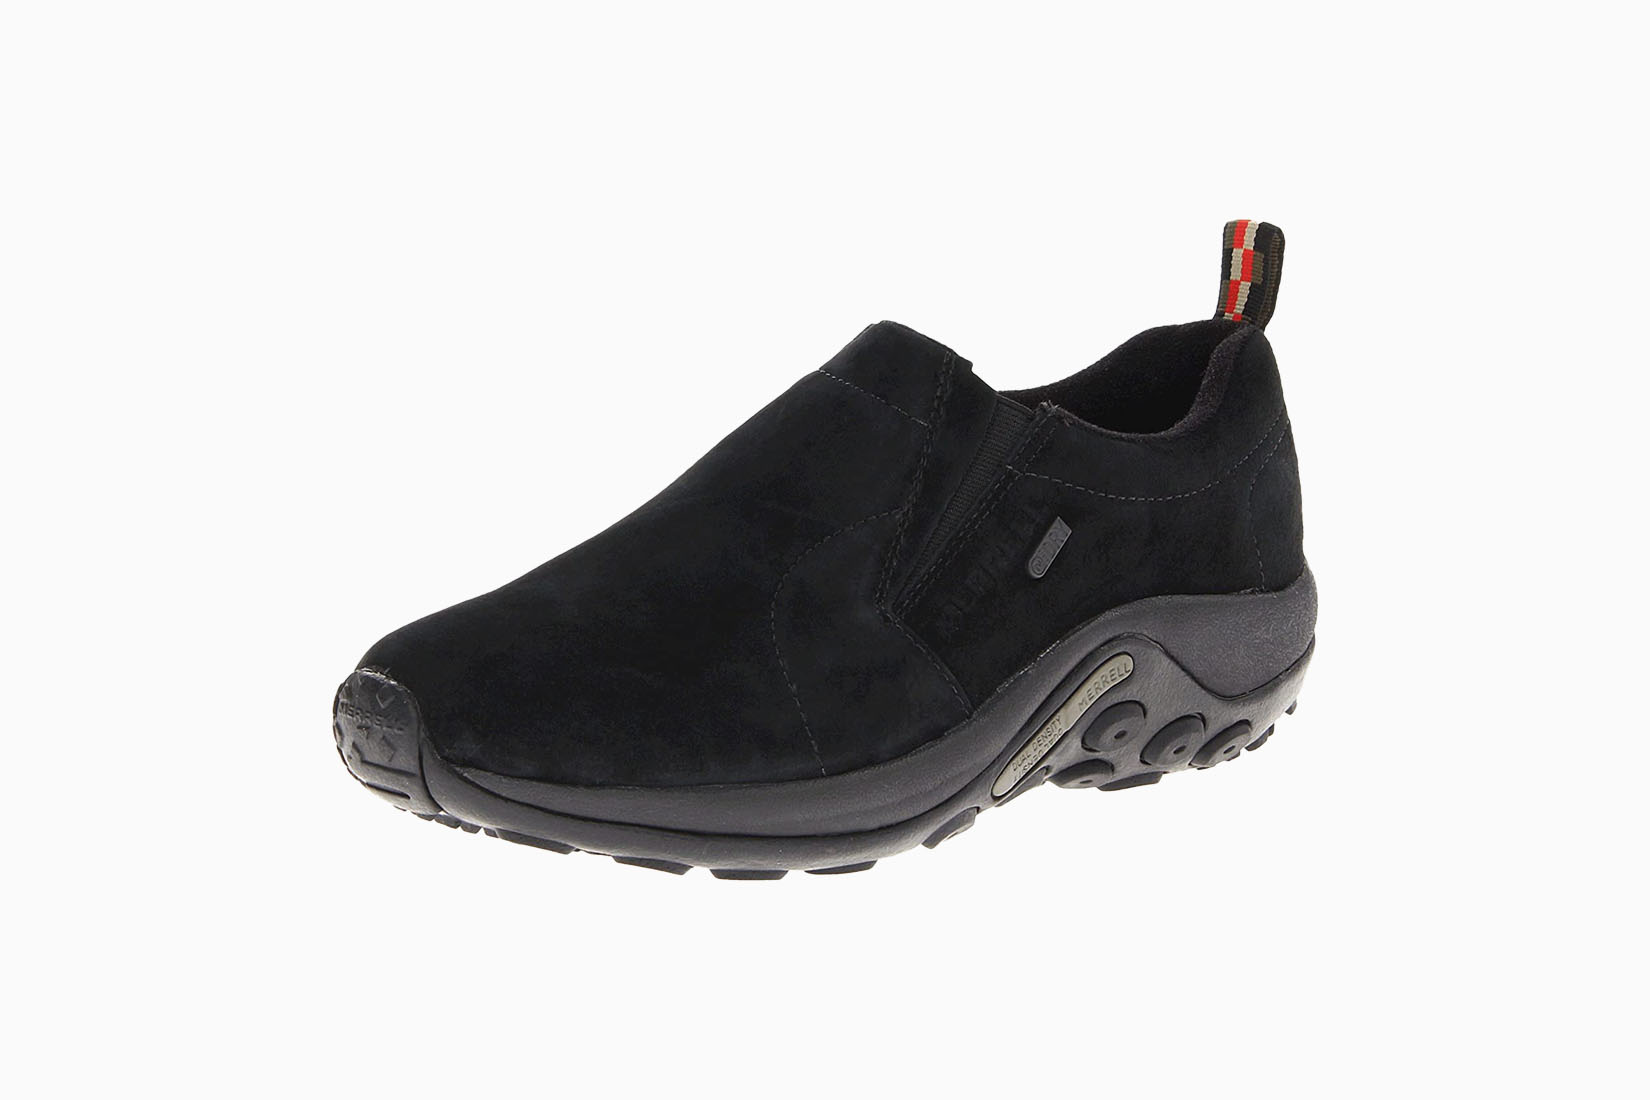 best waterproof shoes men merrell review Luxe Digital